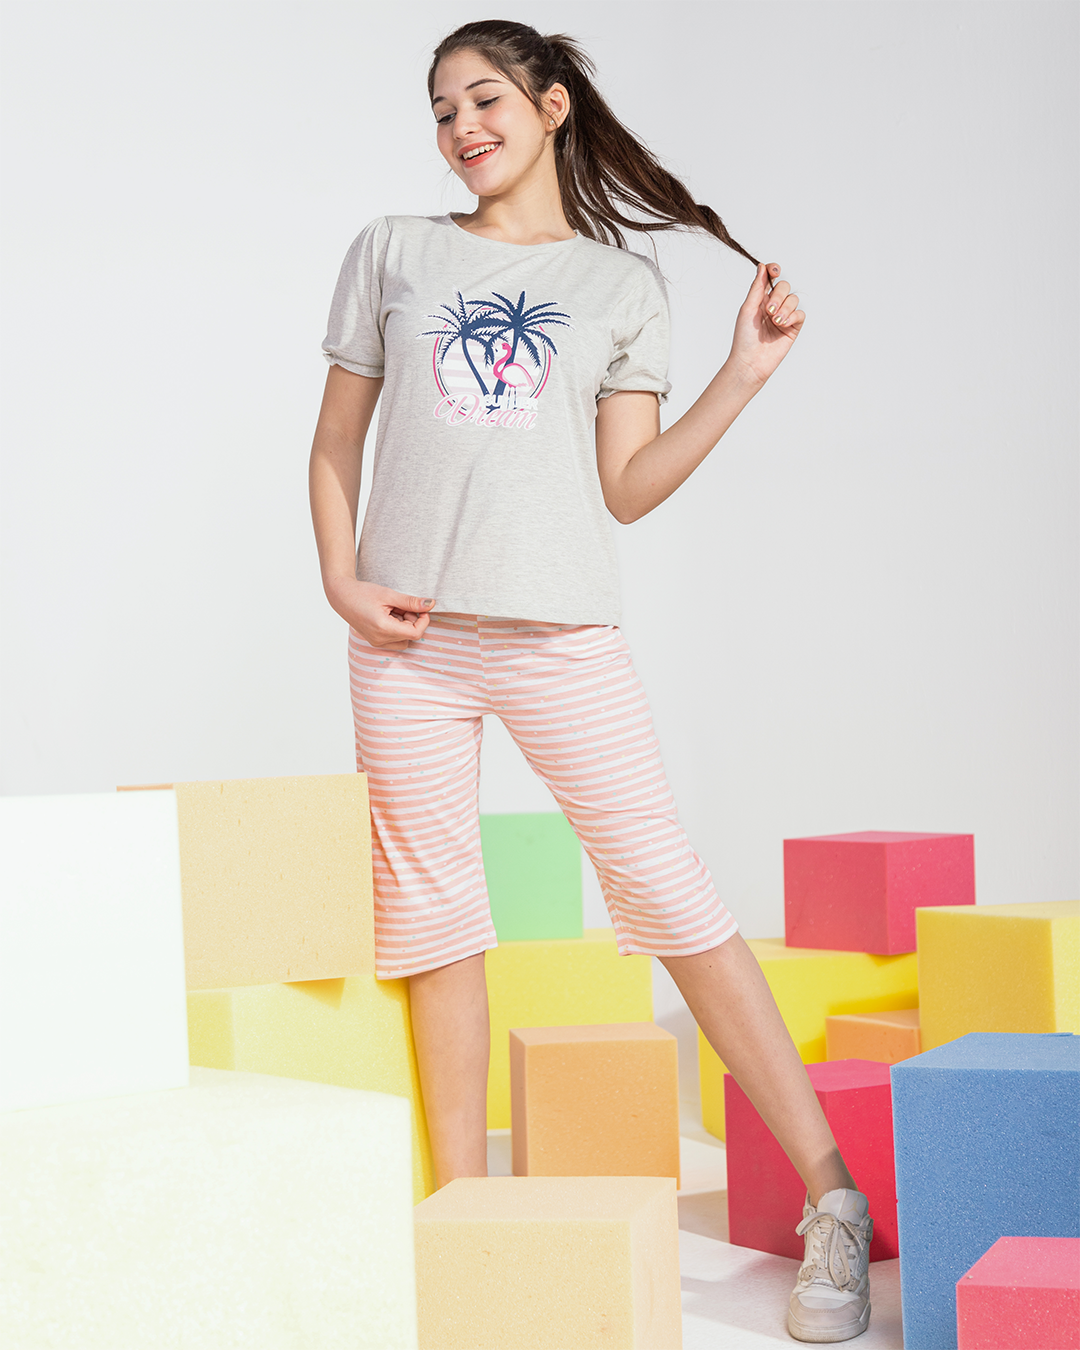 Girls' pajamas, Pintacore Brasula, printed